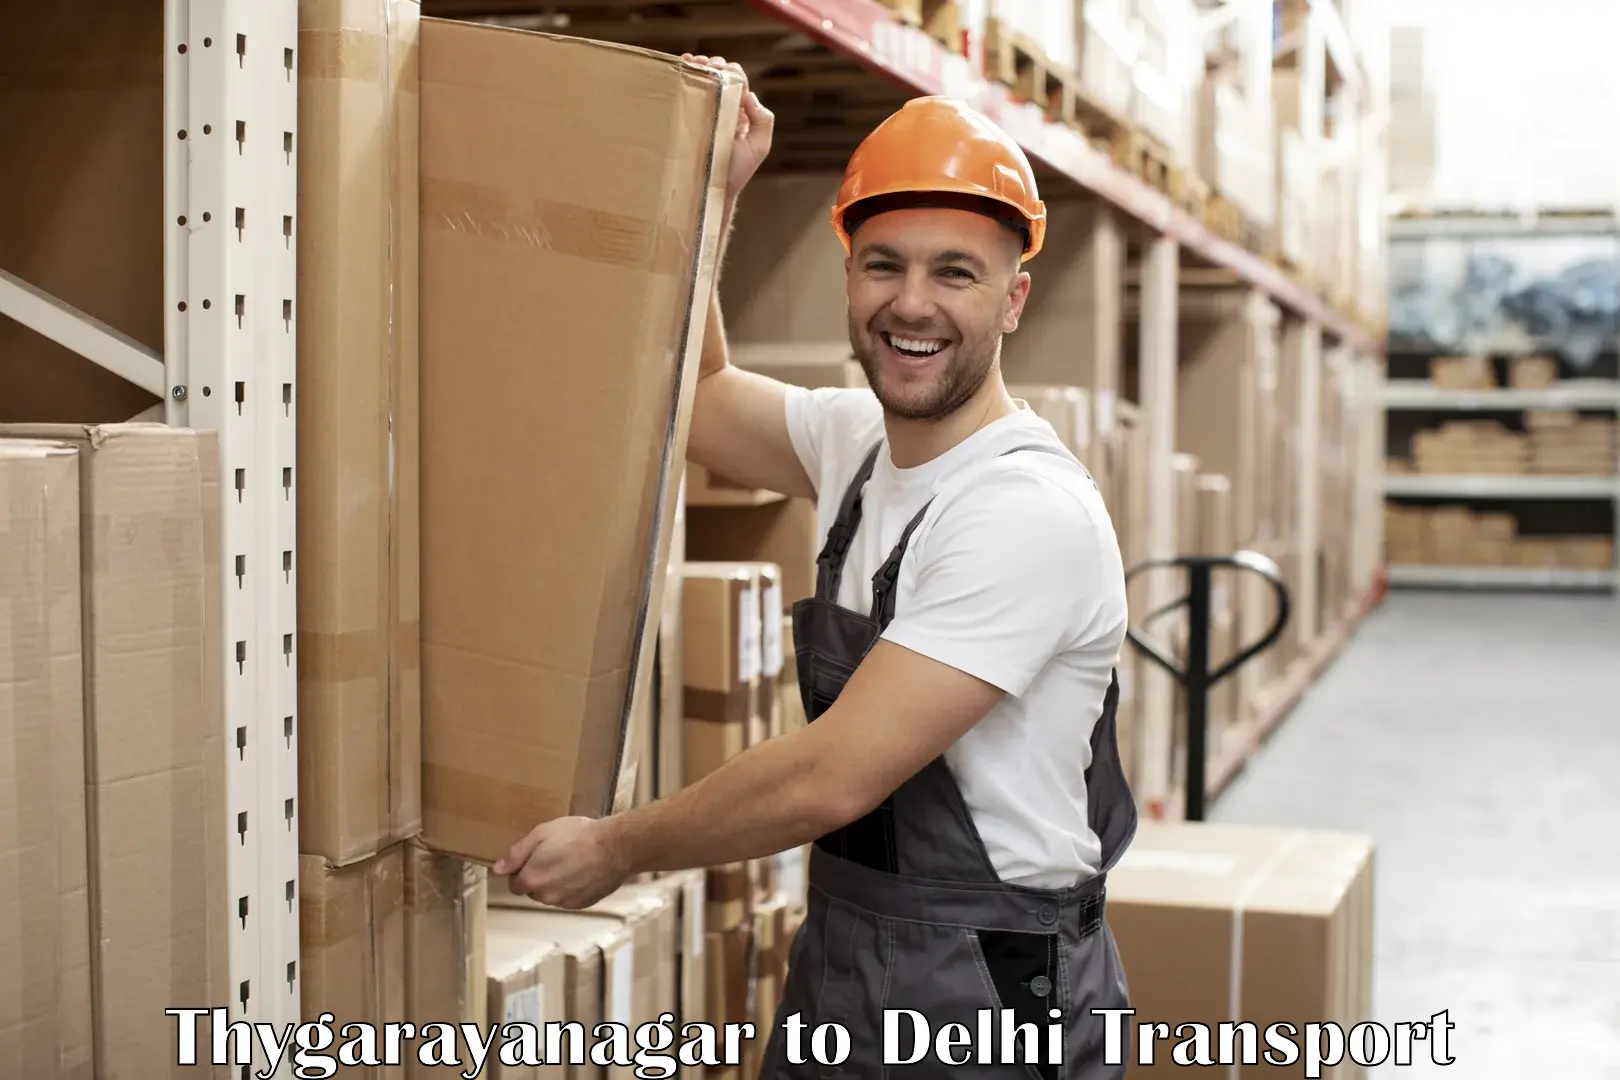 Container transport service Thygarayanagar to Sansad Marg